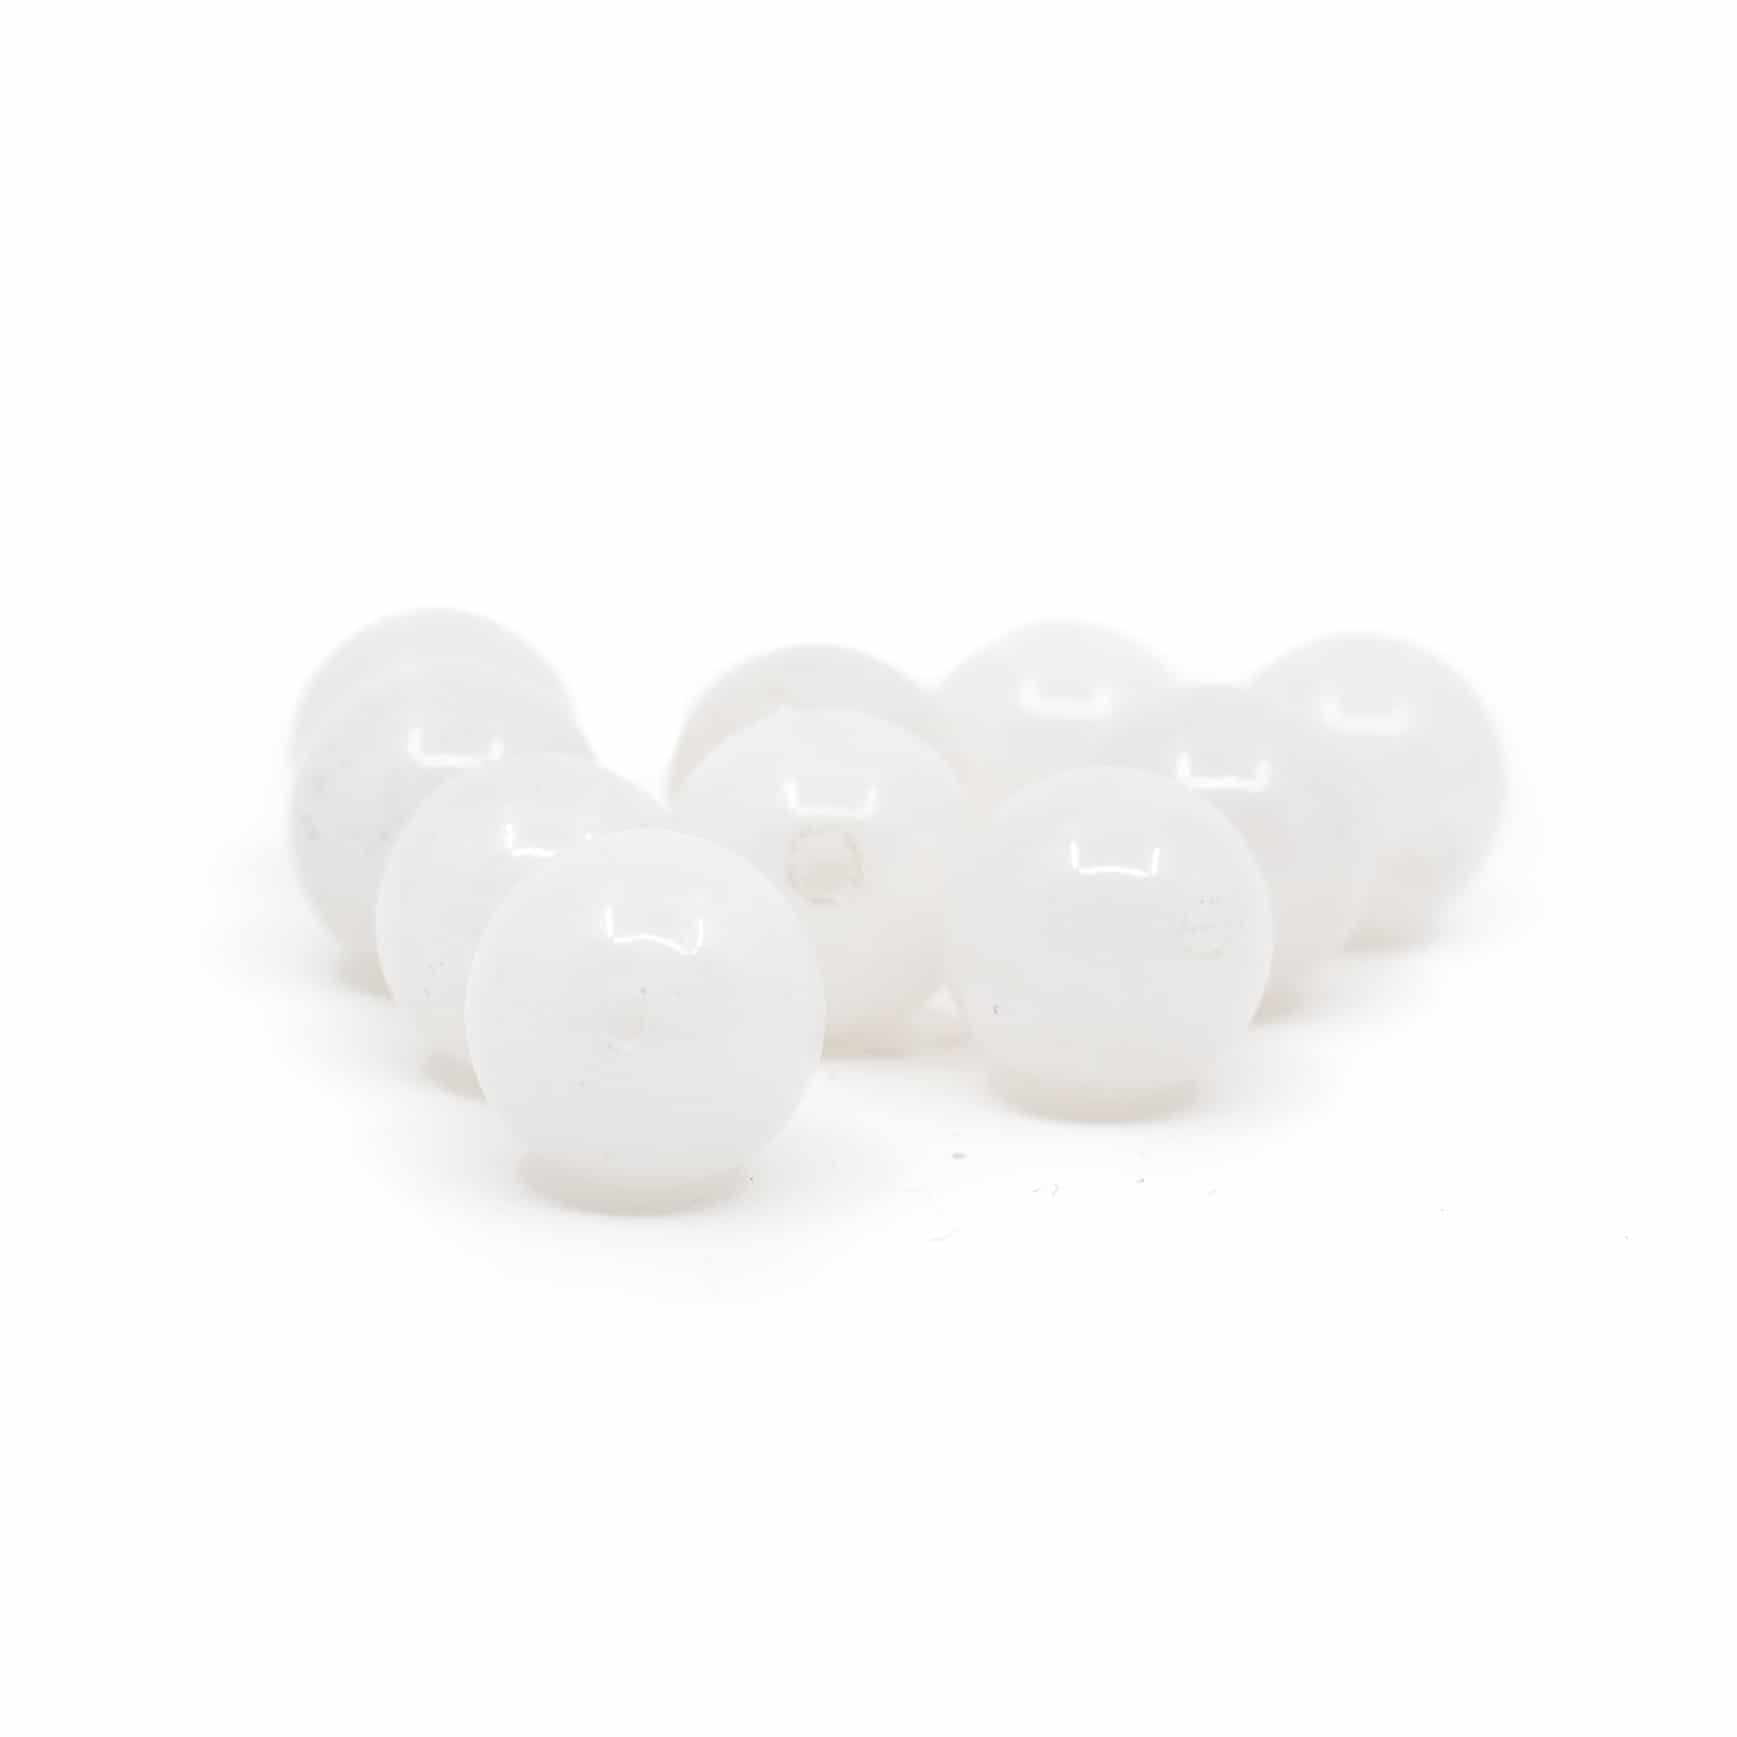 Edelstein Lose Perlen Weiße Jade - 10 Stück (10 mm)